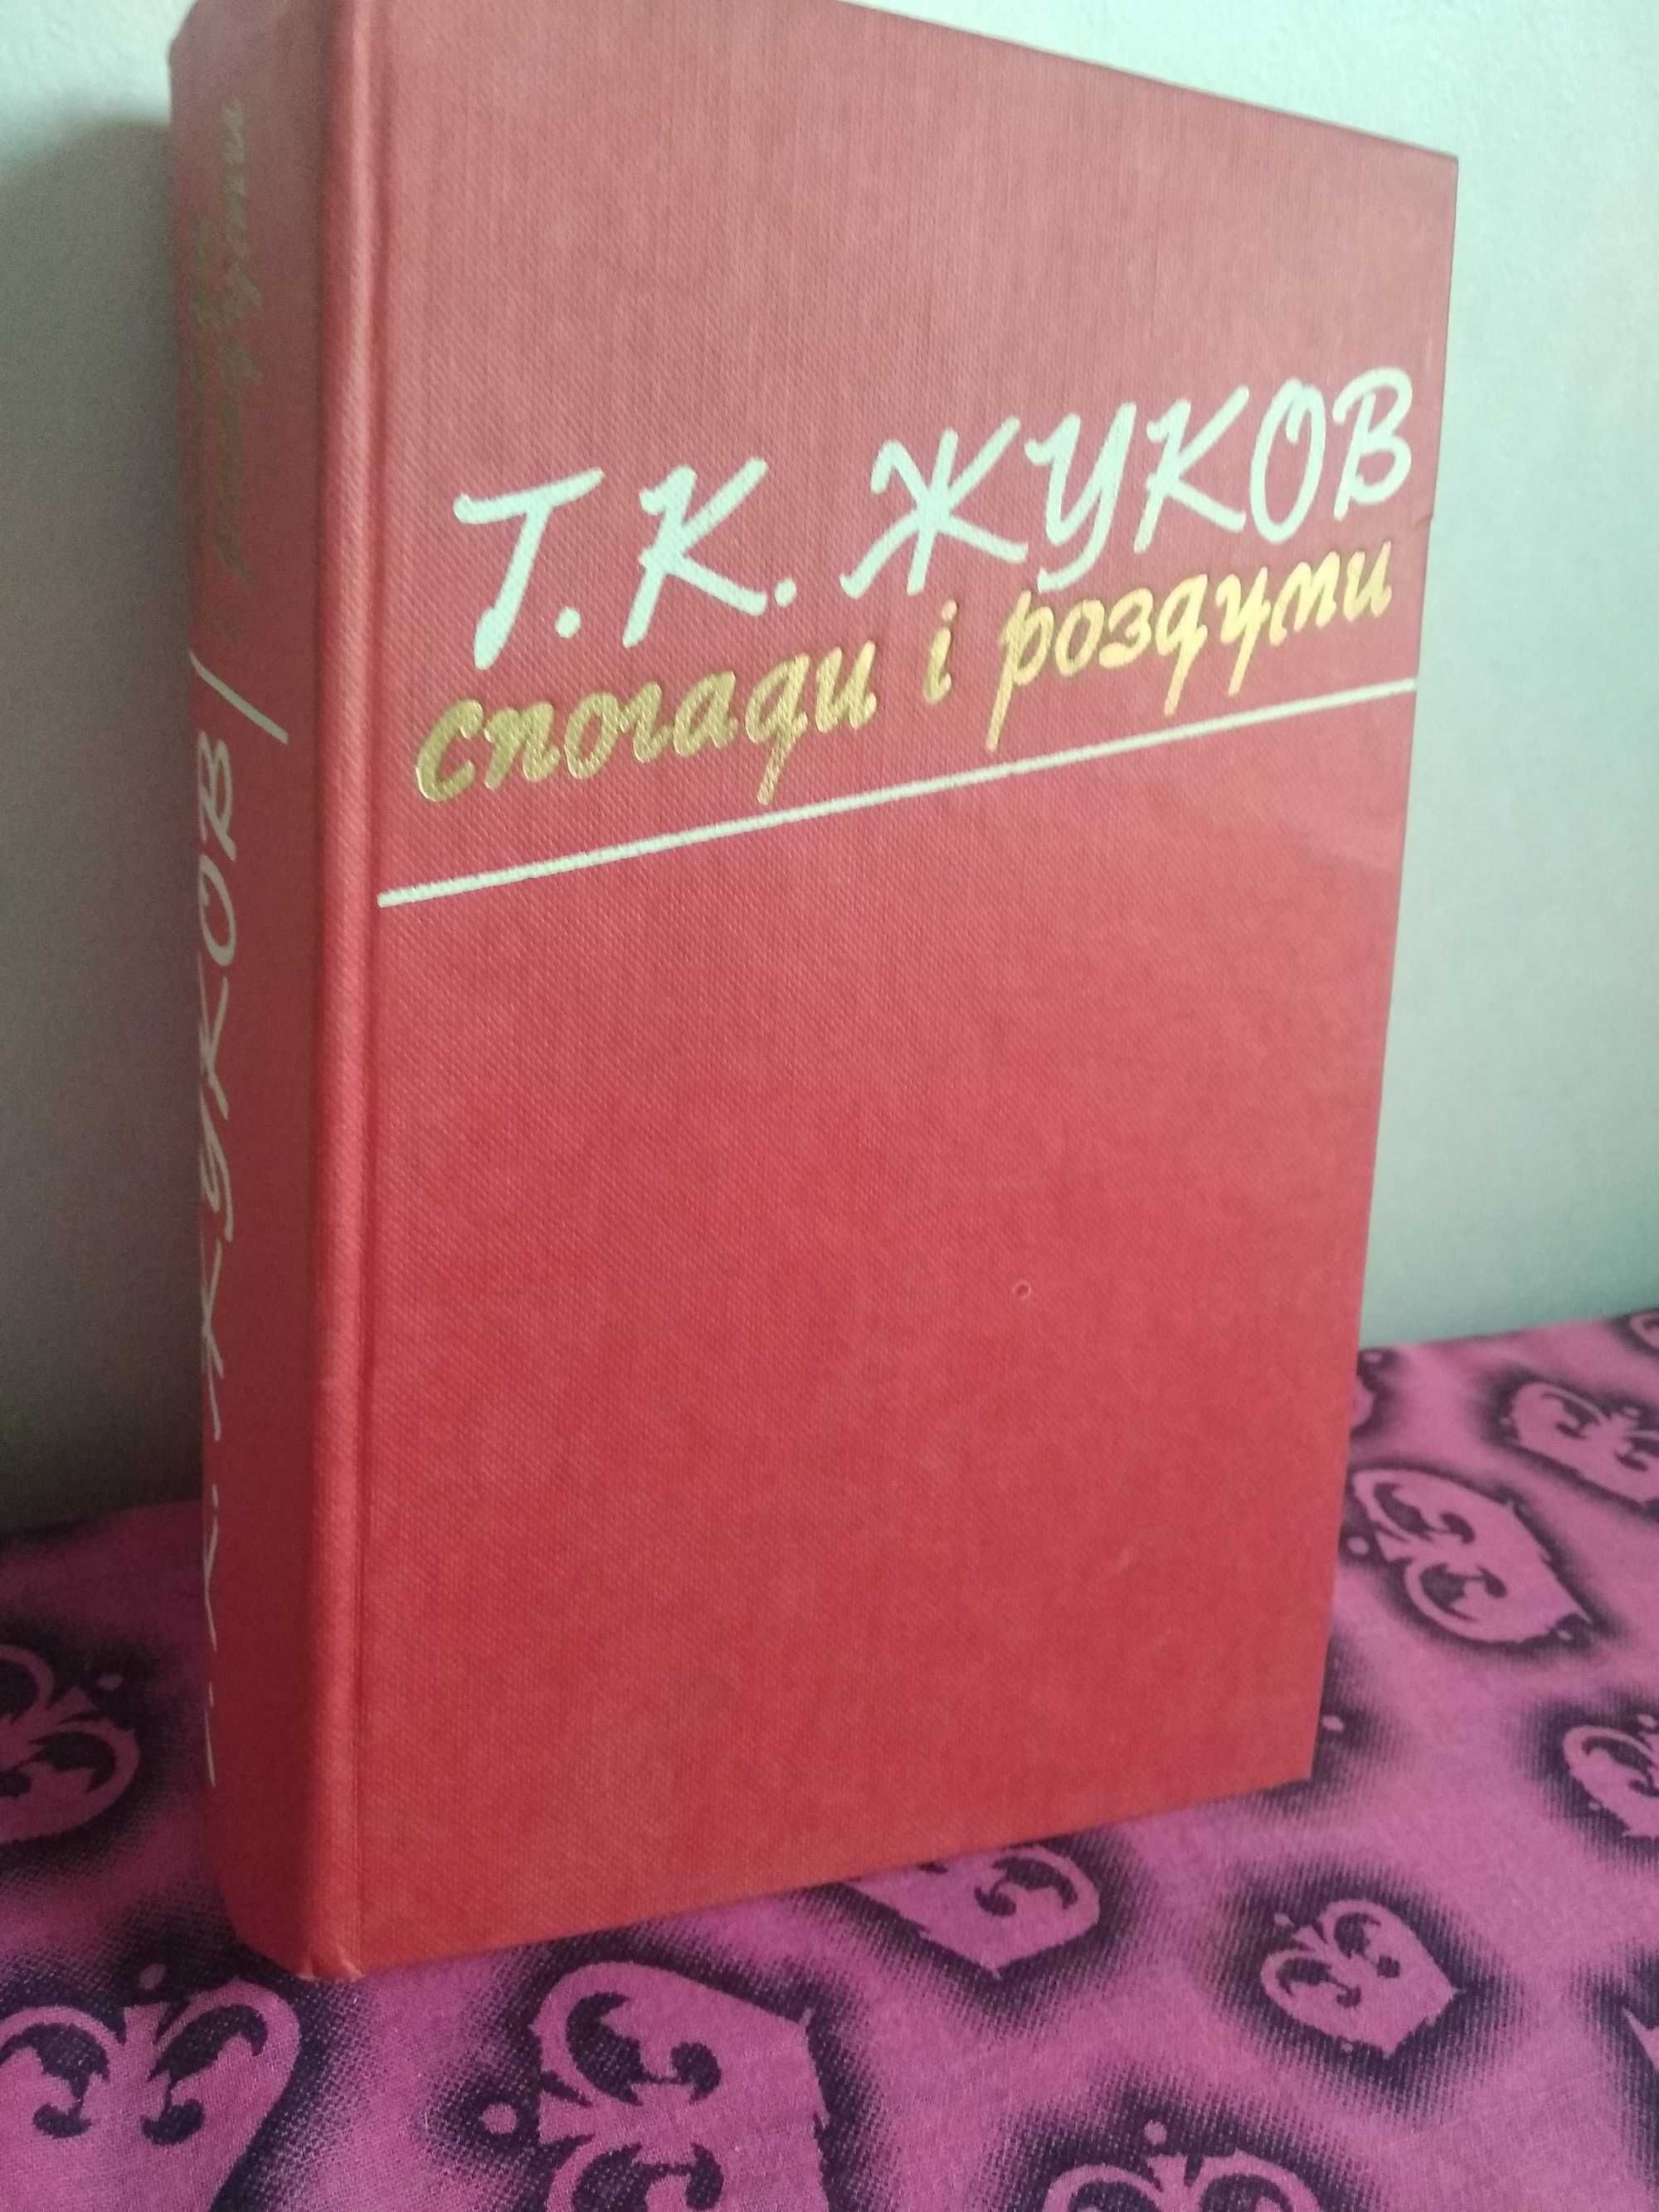 Книга Г.К. Жуков. "Спогади і роздуми".